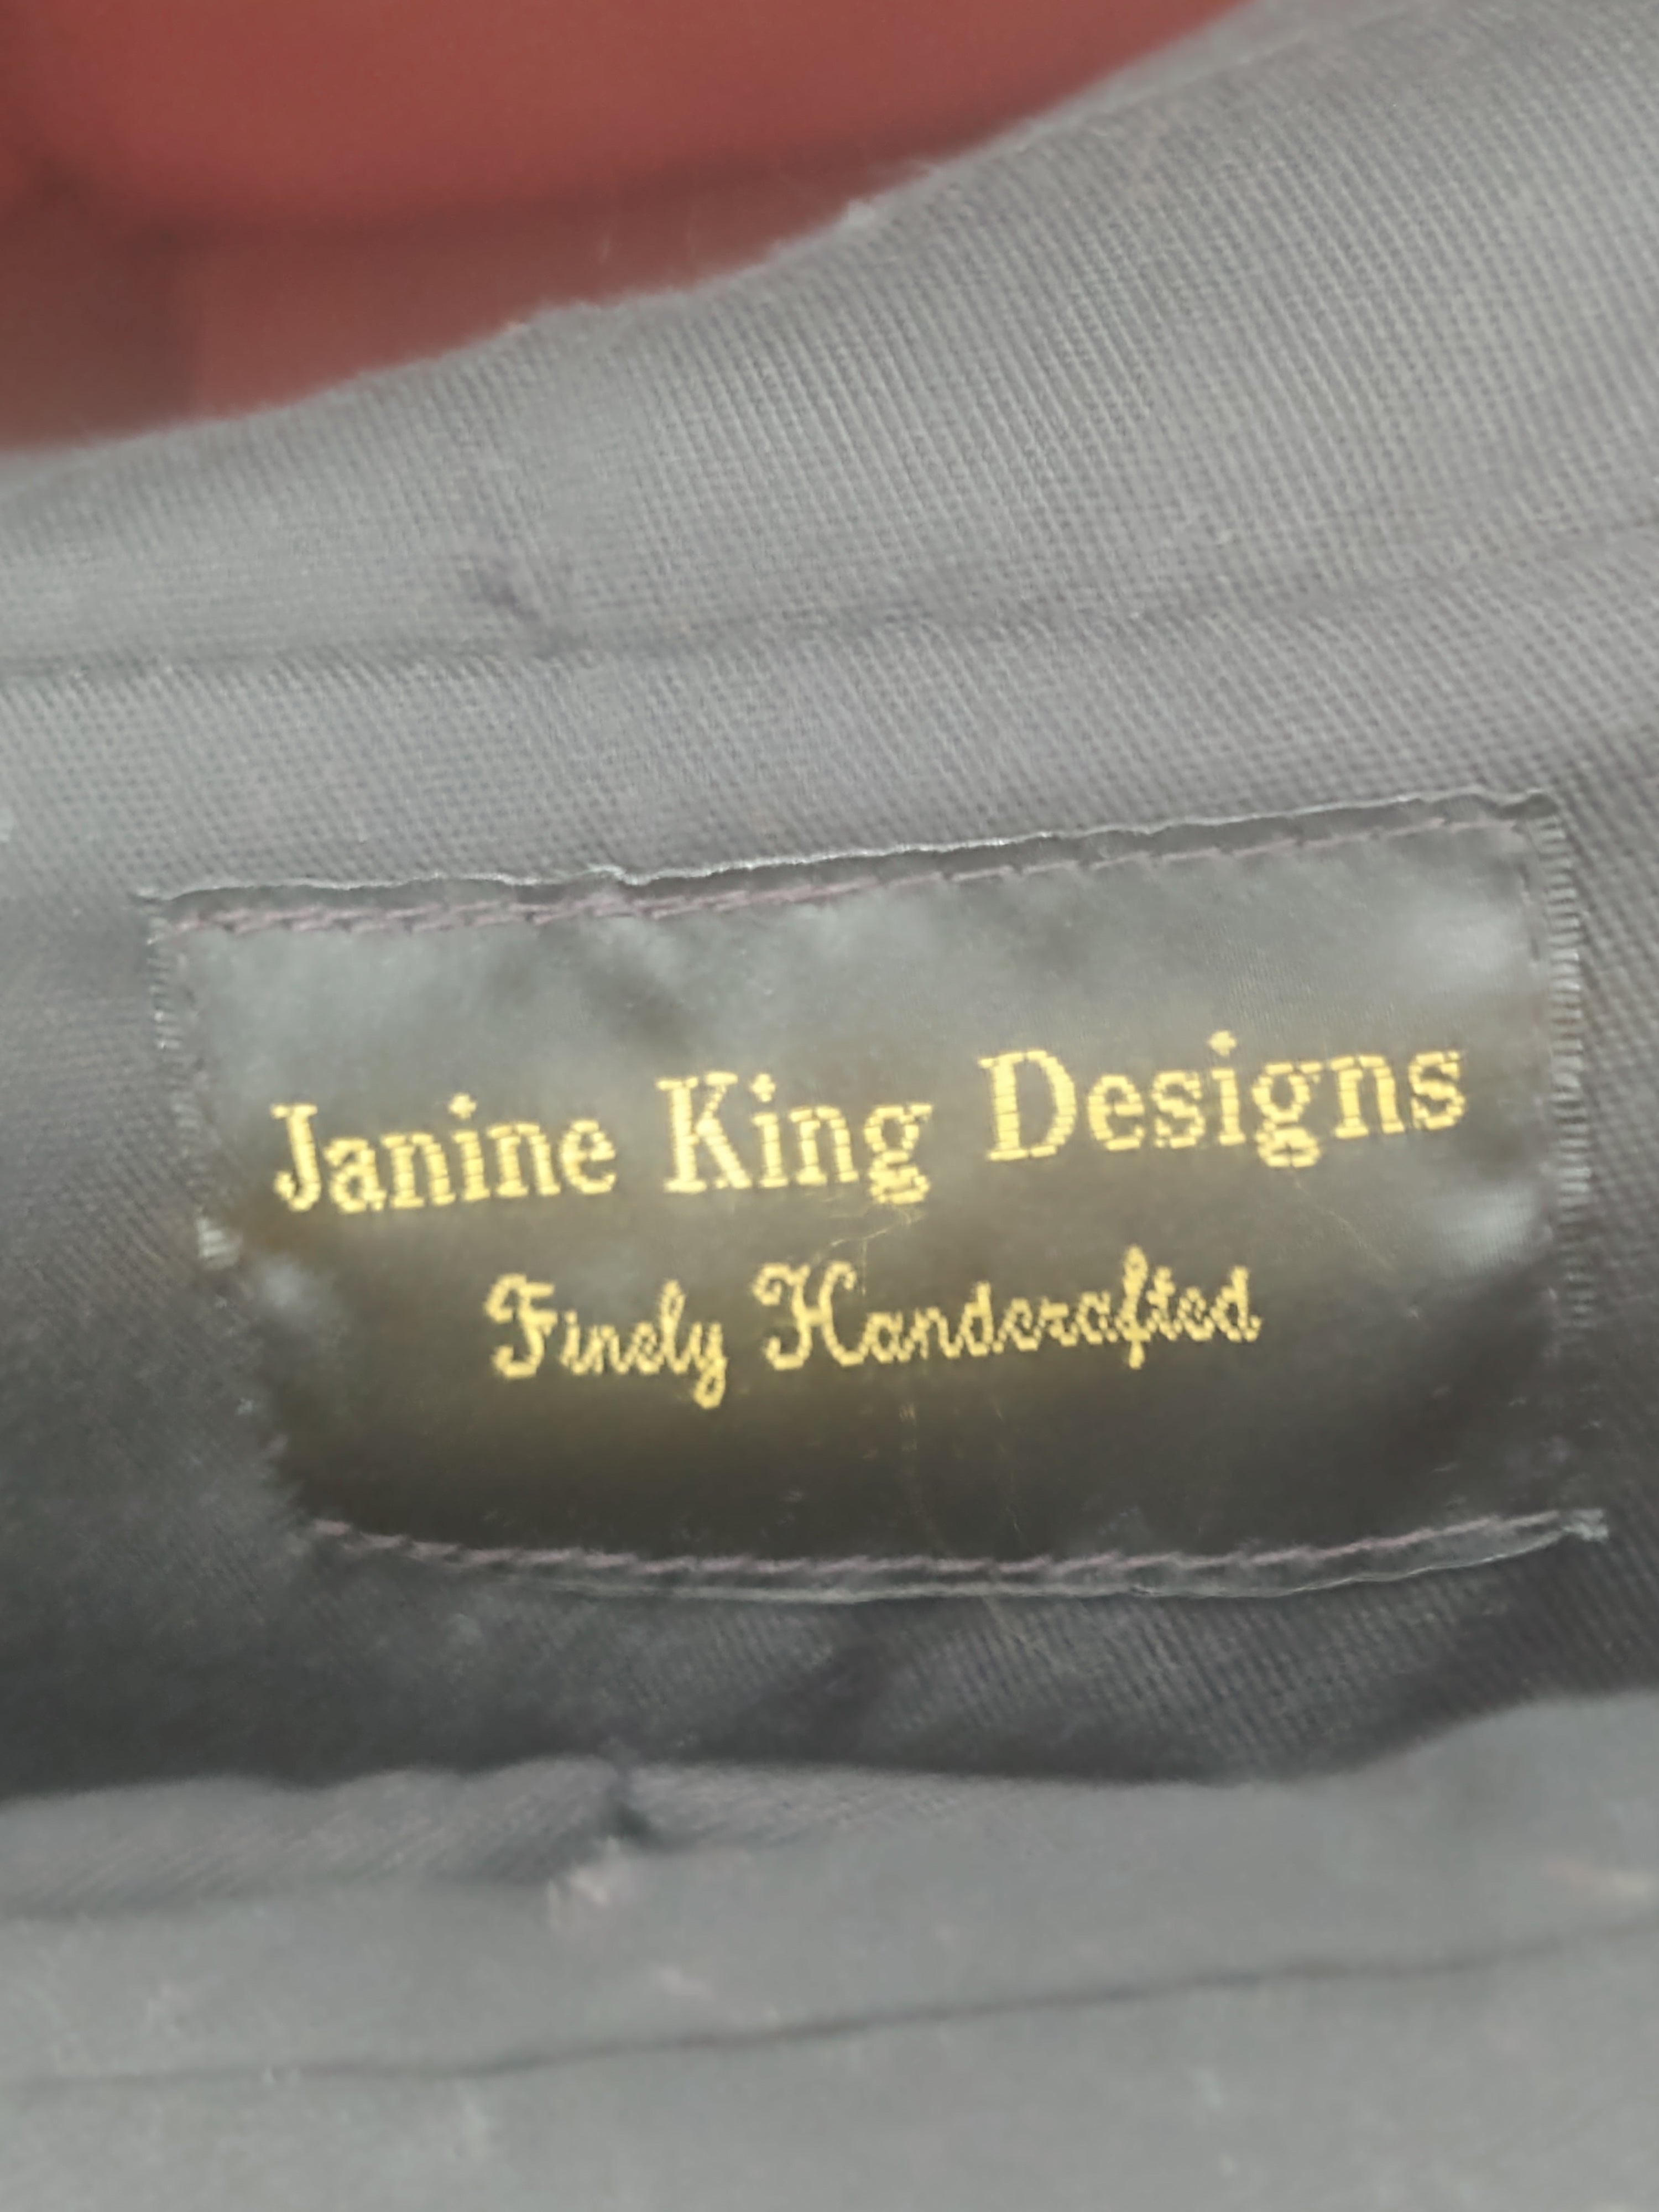 Bolso de mano pequeño de tela Janine King Design de segunda mano en negro, marrón y blanco (recogida gratuita en Manchester, KY)